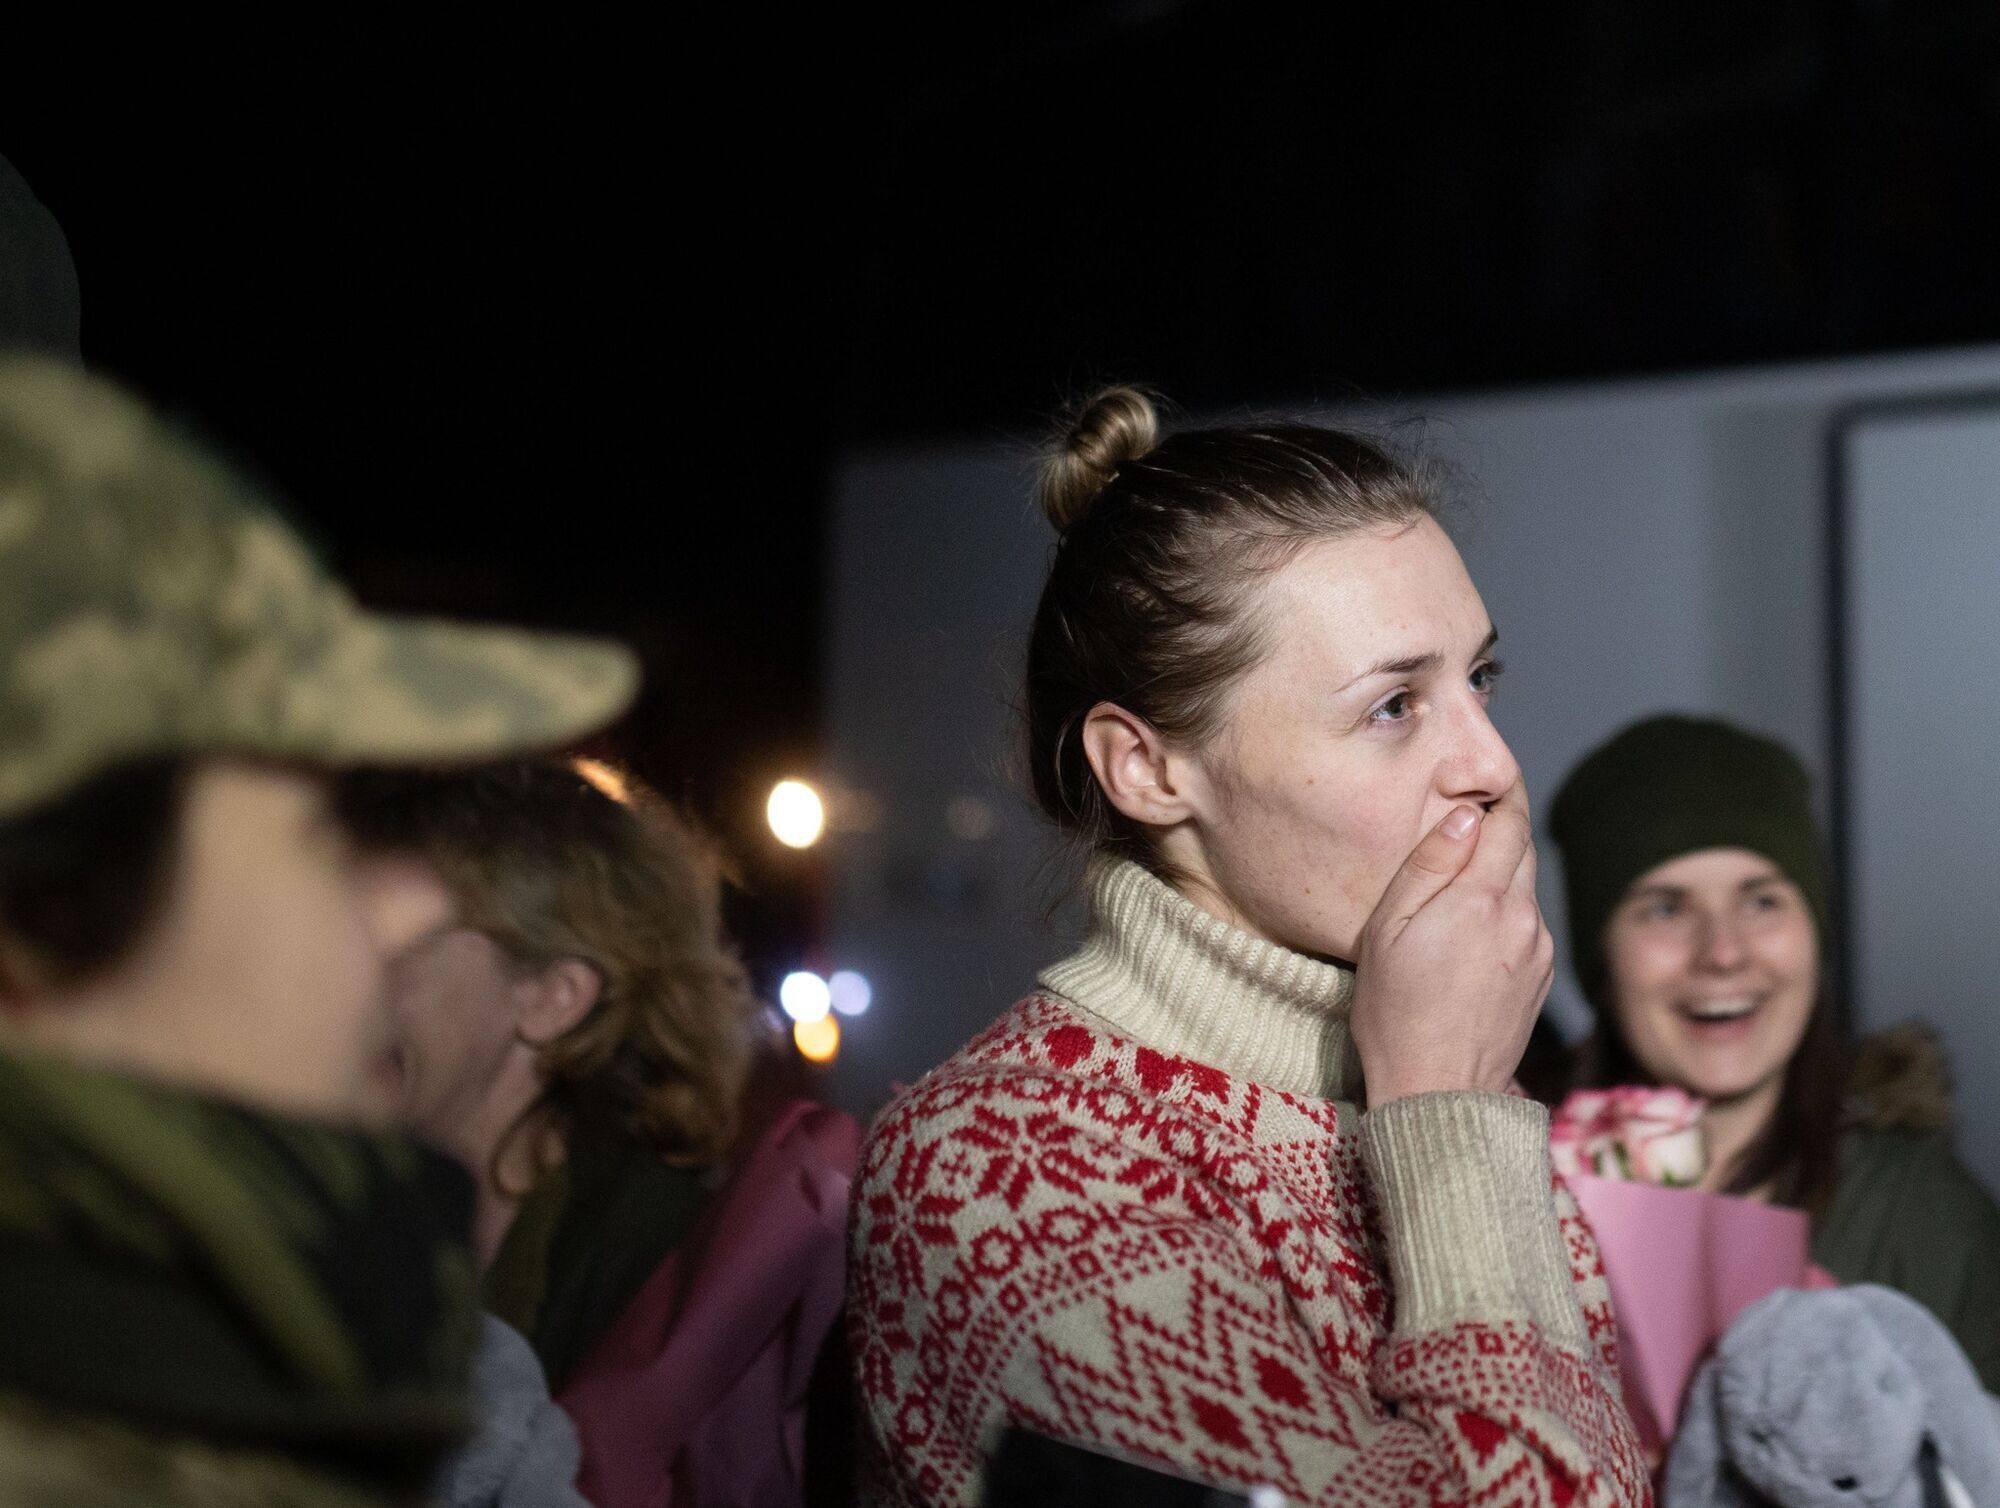 Объятия и слезы радости: вернувшихся из российского плена украинок встретили на родине. Фото